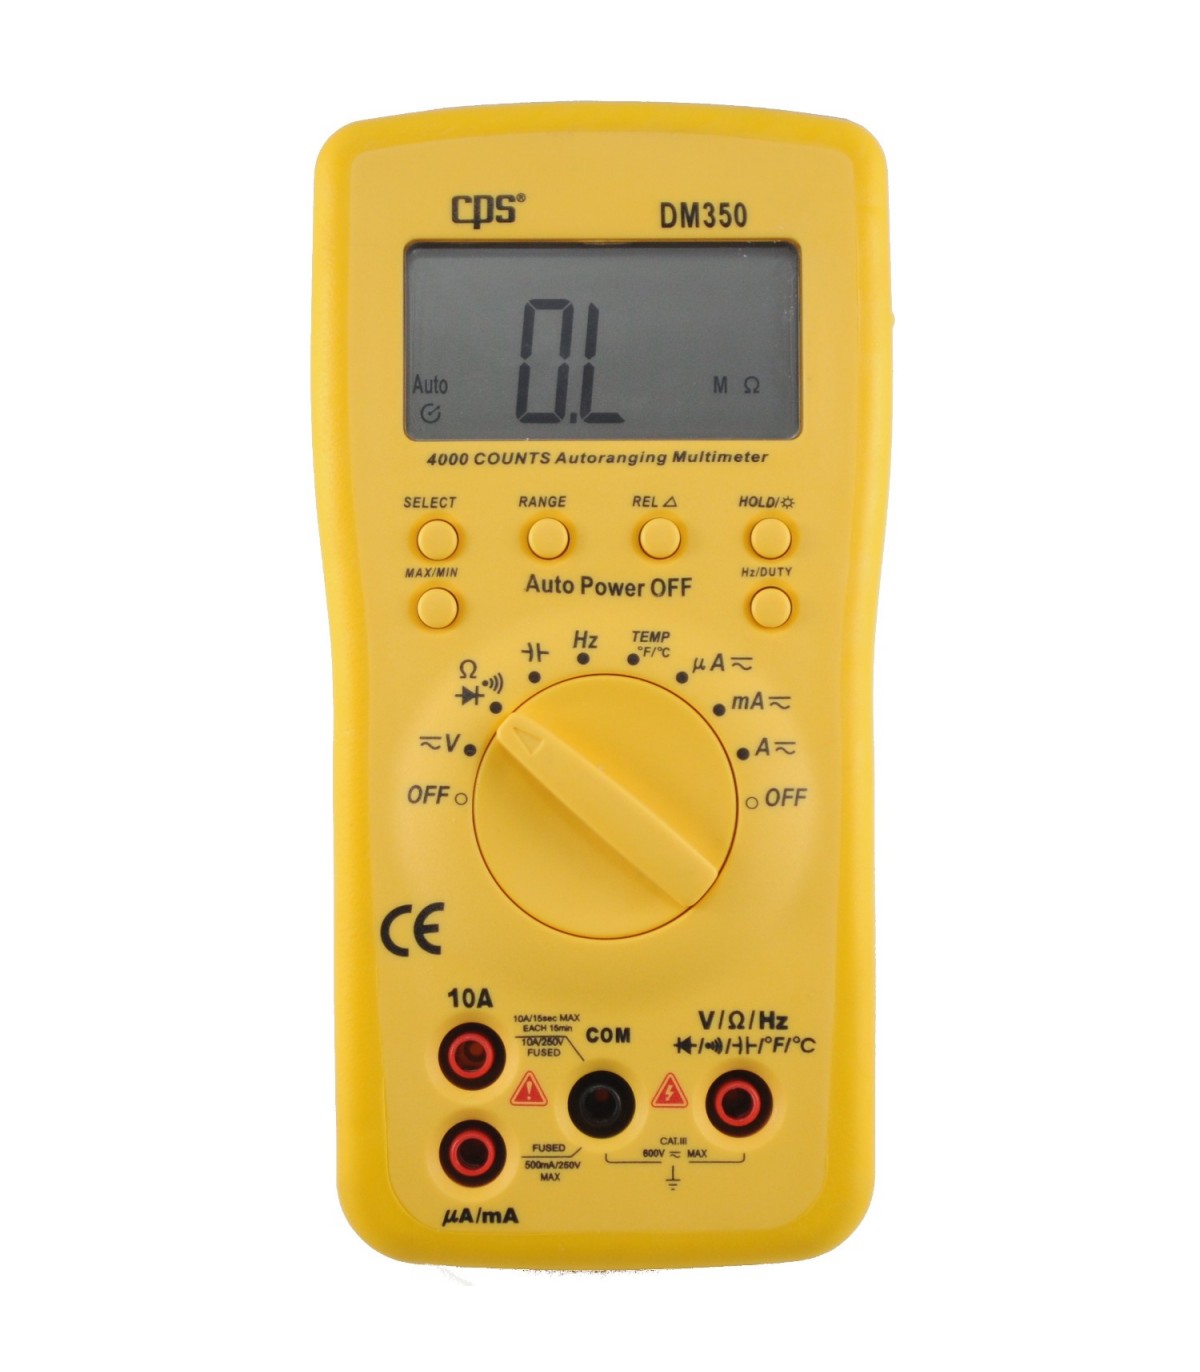 AC Tester Meter, Multímetro digital Voltaje AC/DC Herramienta de  electricista Multímetro Durabilidad extendida Jadeshay A